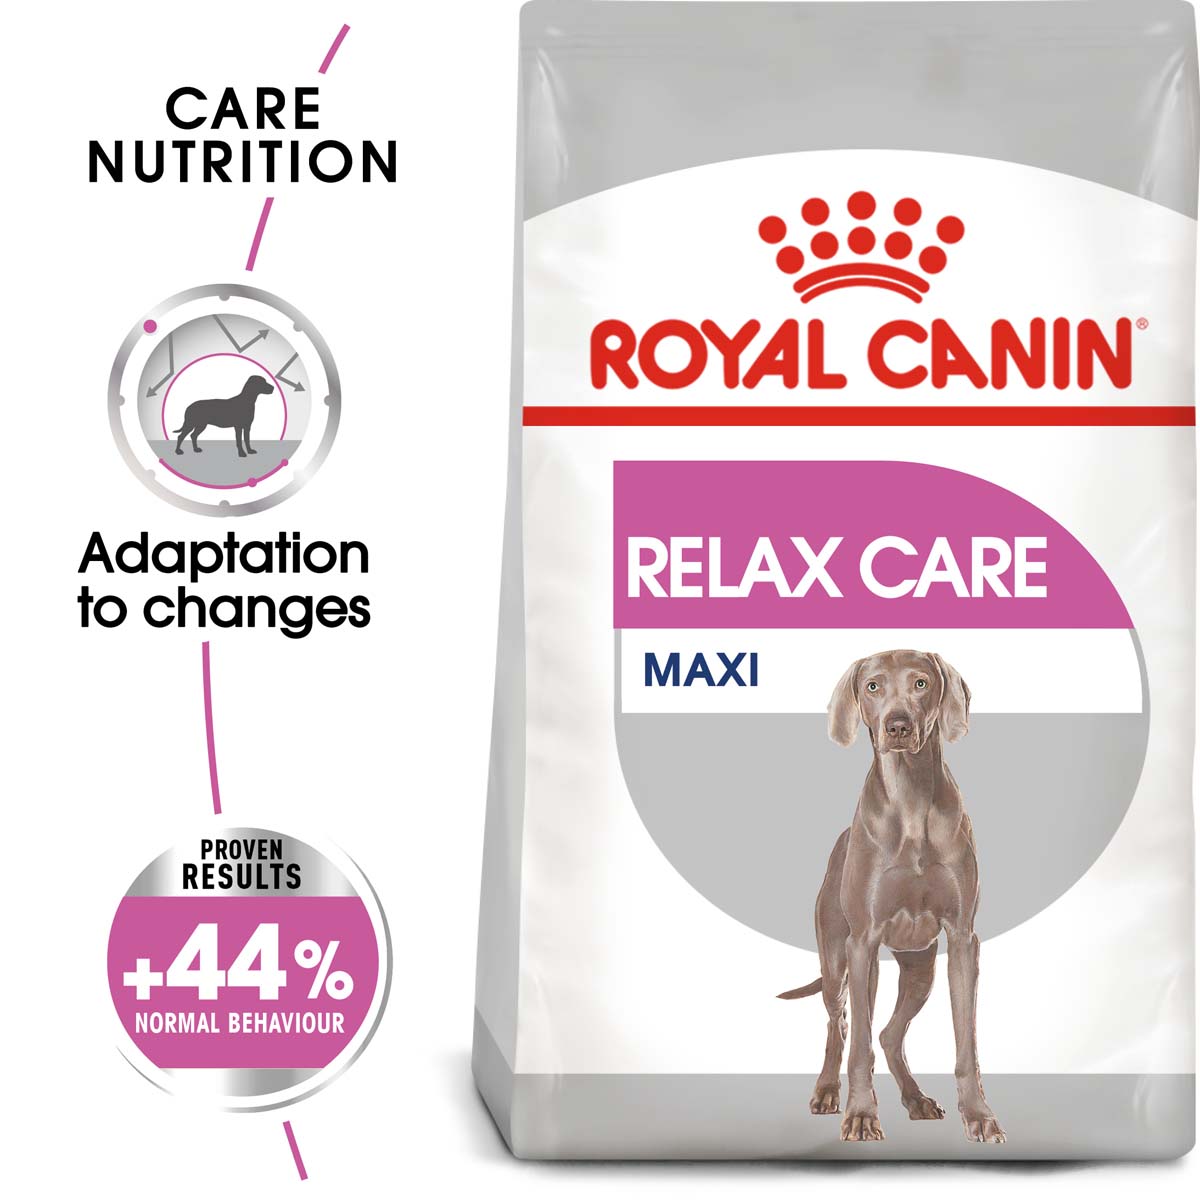 ROYAL CANIN RELAX CARE MAXI pro velké psy v neklidném prostředí